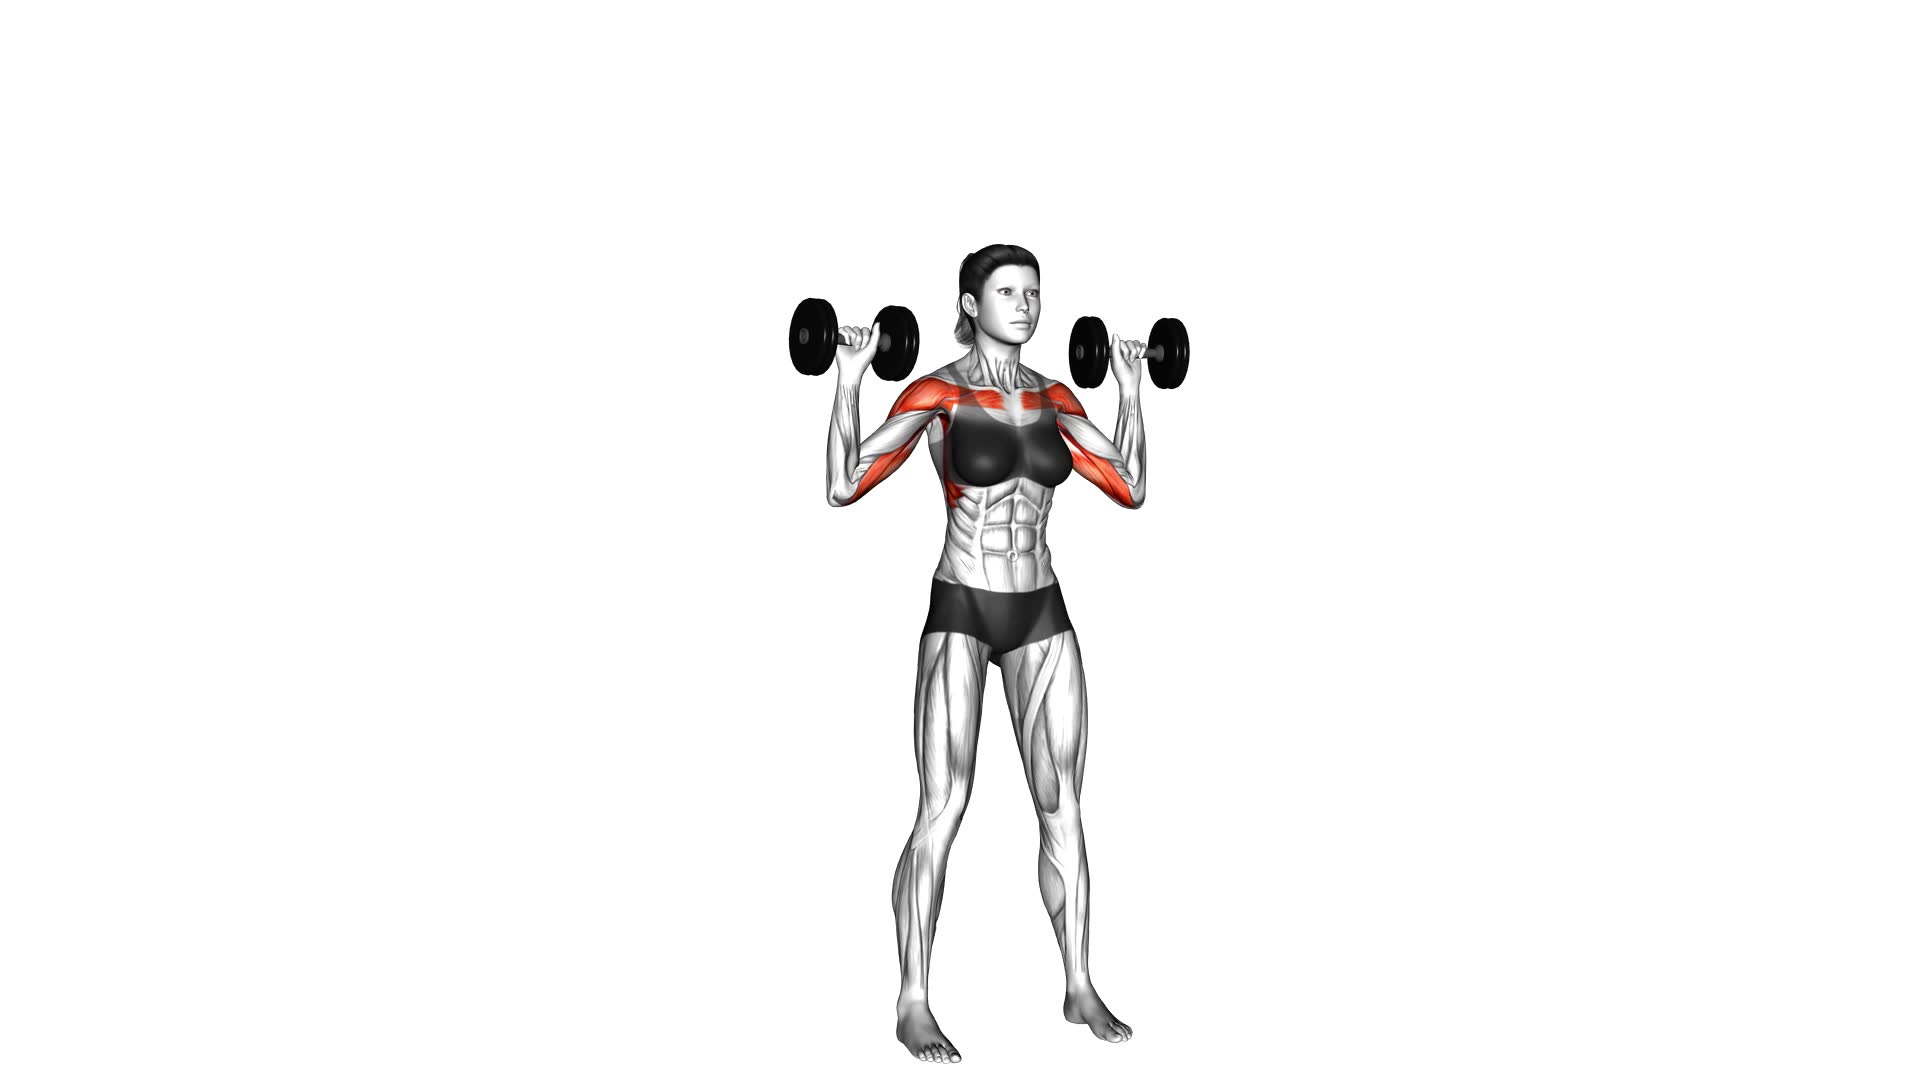 Dumbbell Alternate Shoulder Press (female) - Video Exercise Guide & Tips